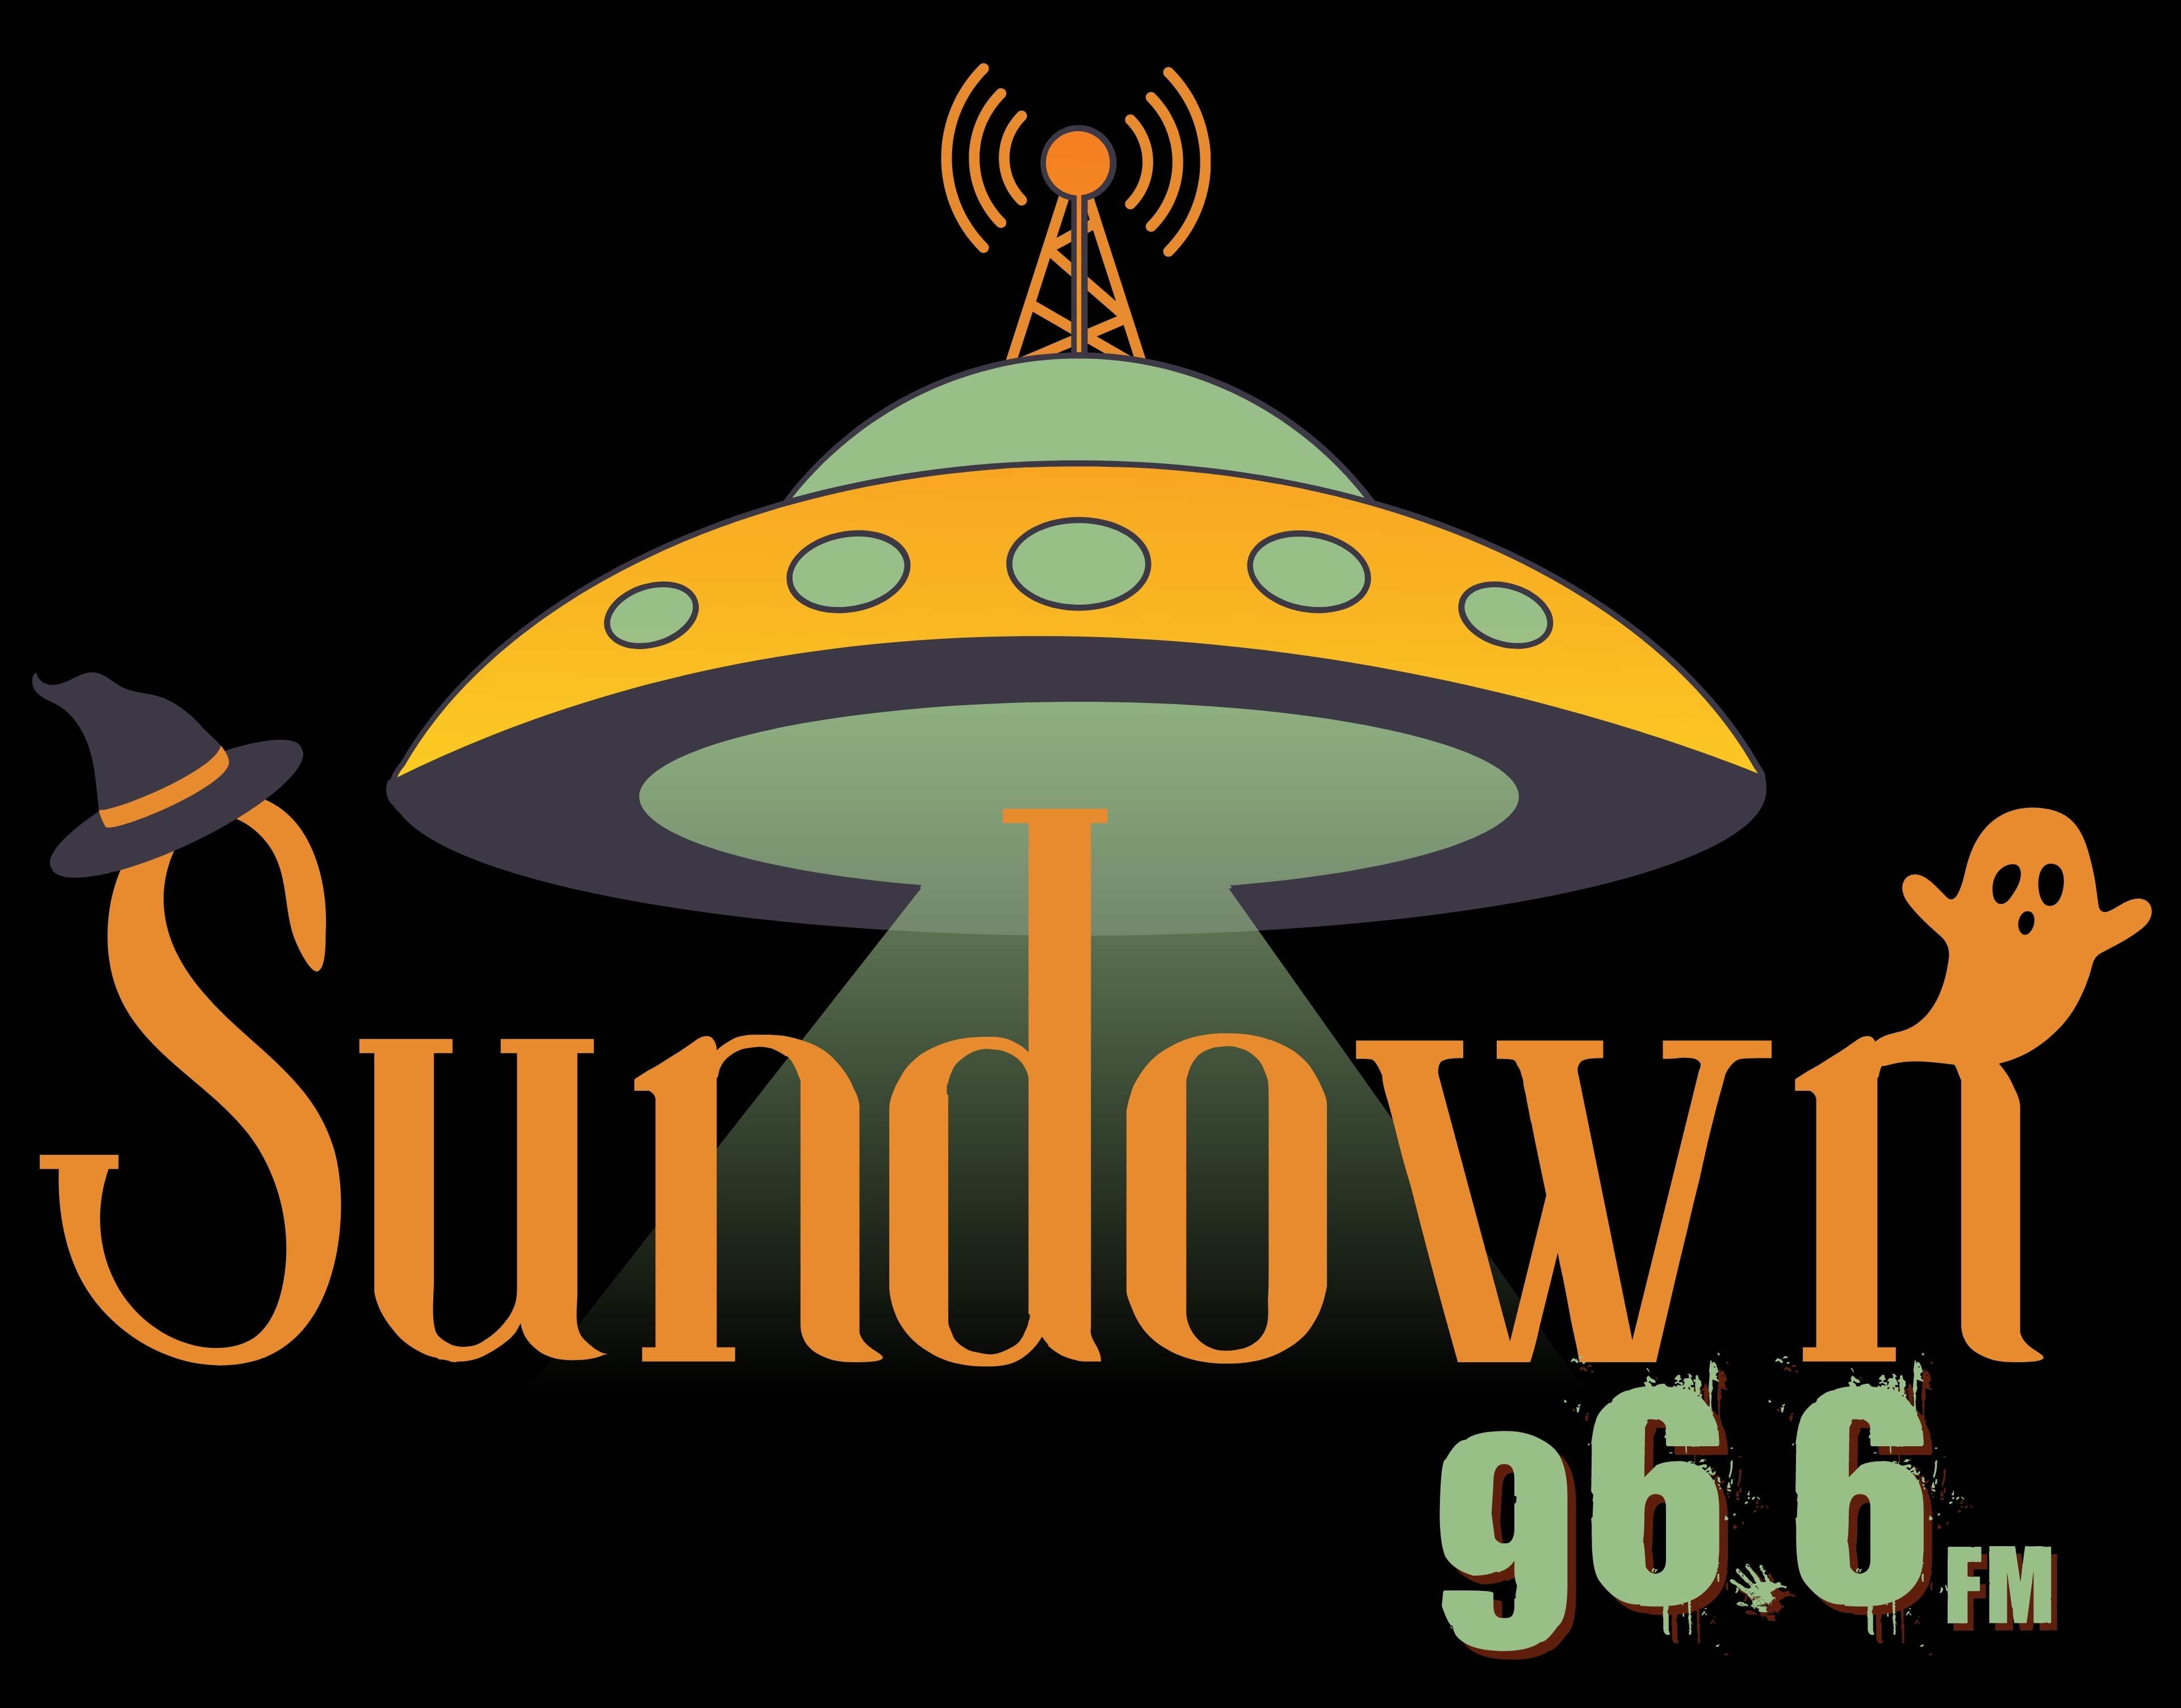 Art for Sundown 96.6FM 7 by Sundown 96.6 FM 7